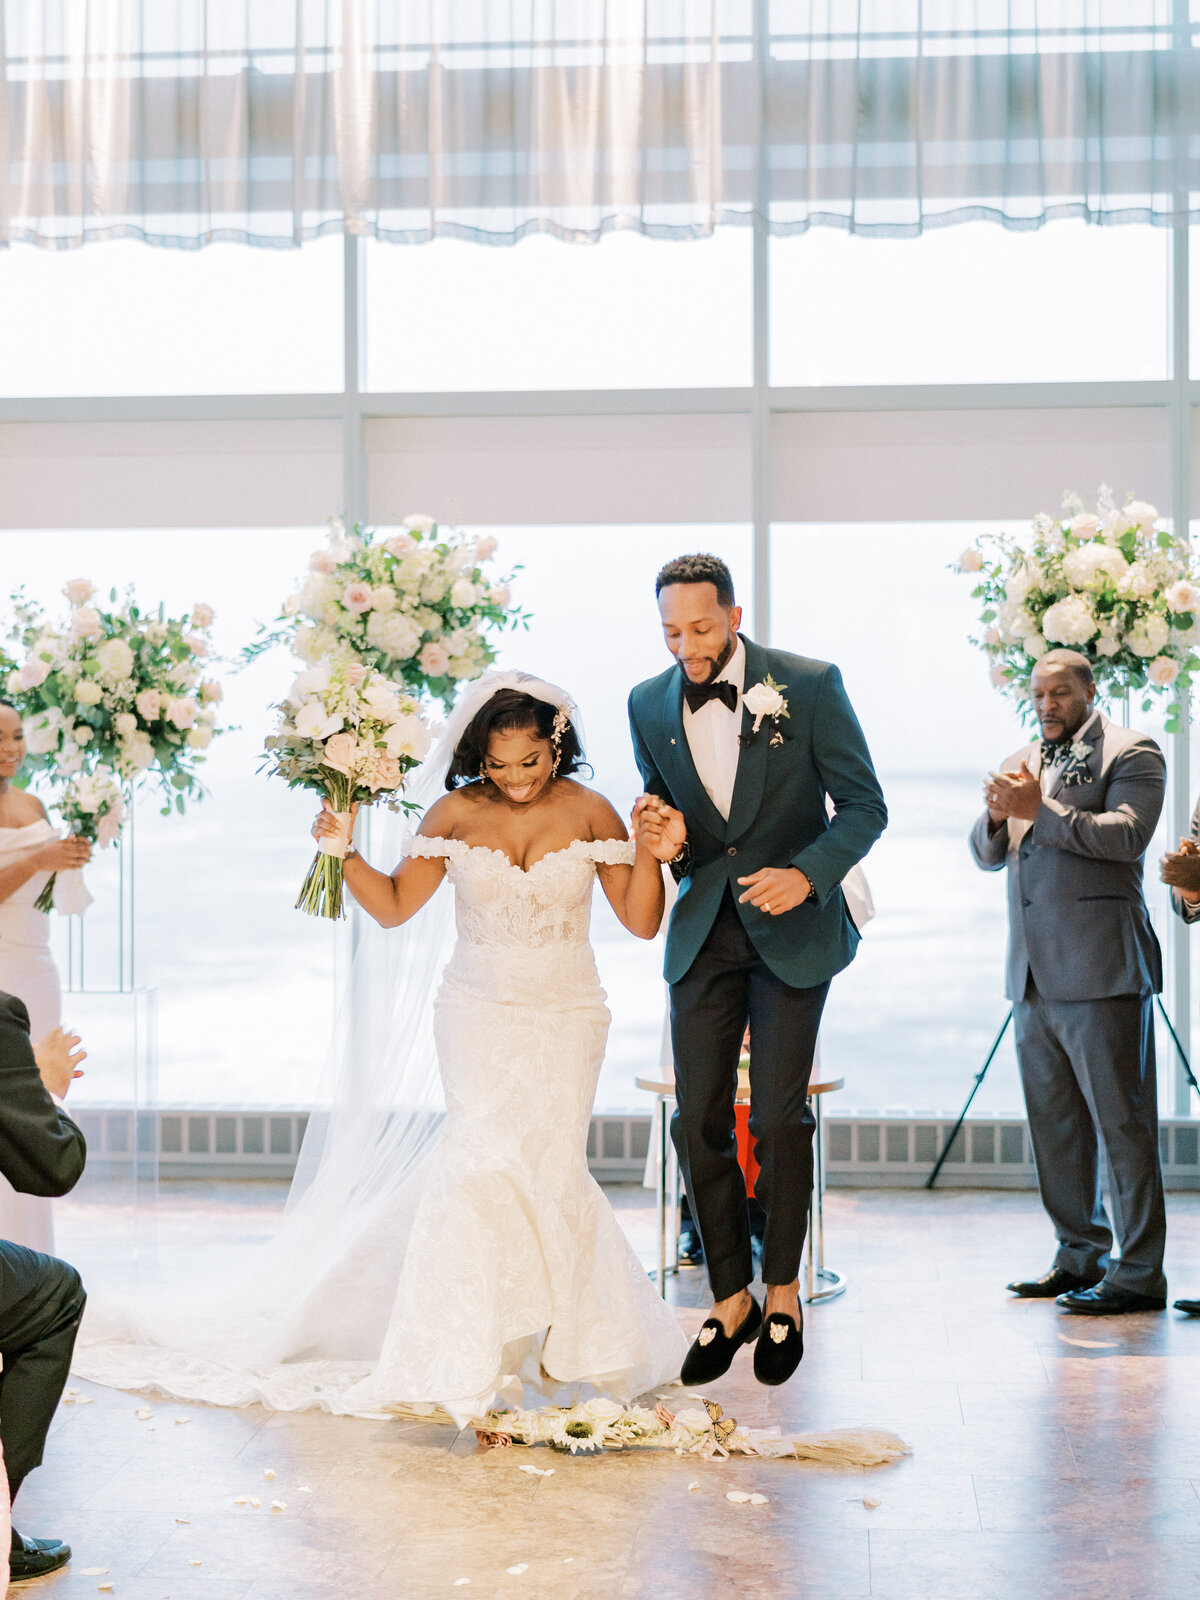 Chicago Film Wedding Photographer | Amarachi Ikeji Photography 106